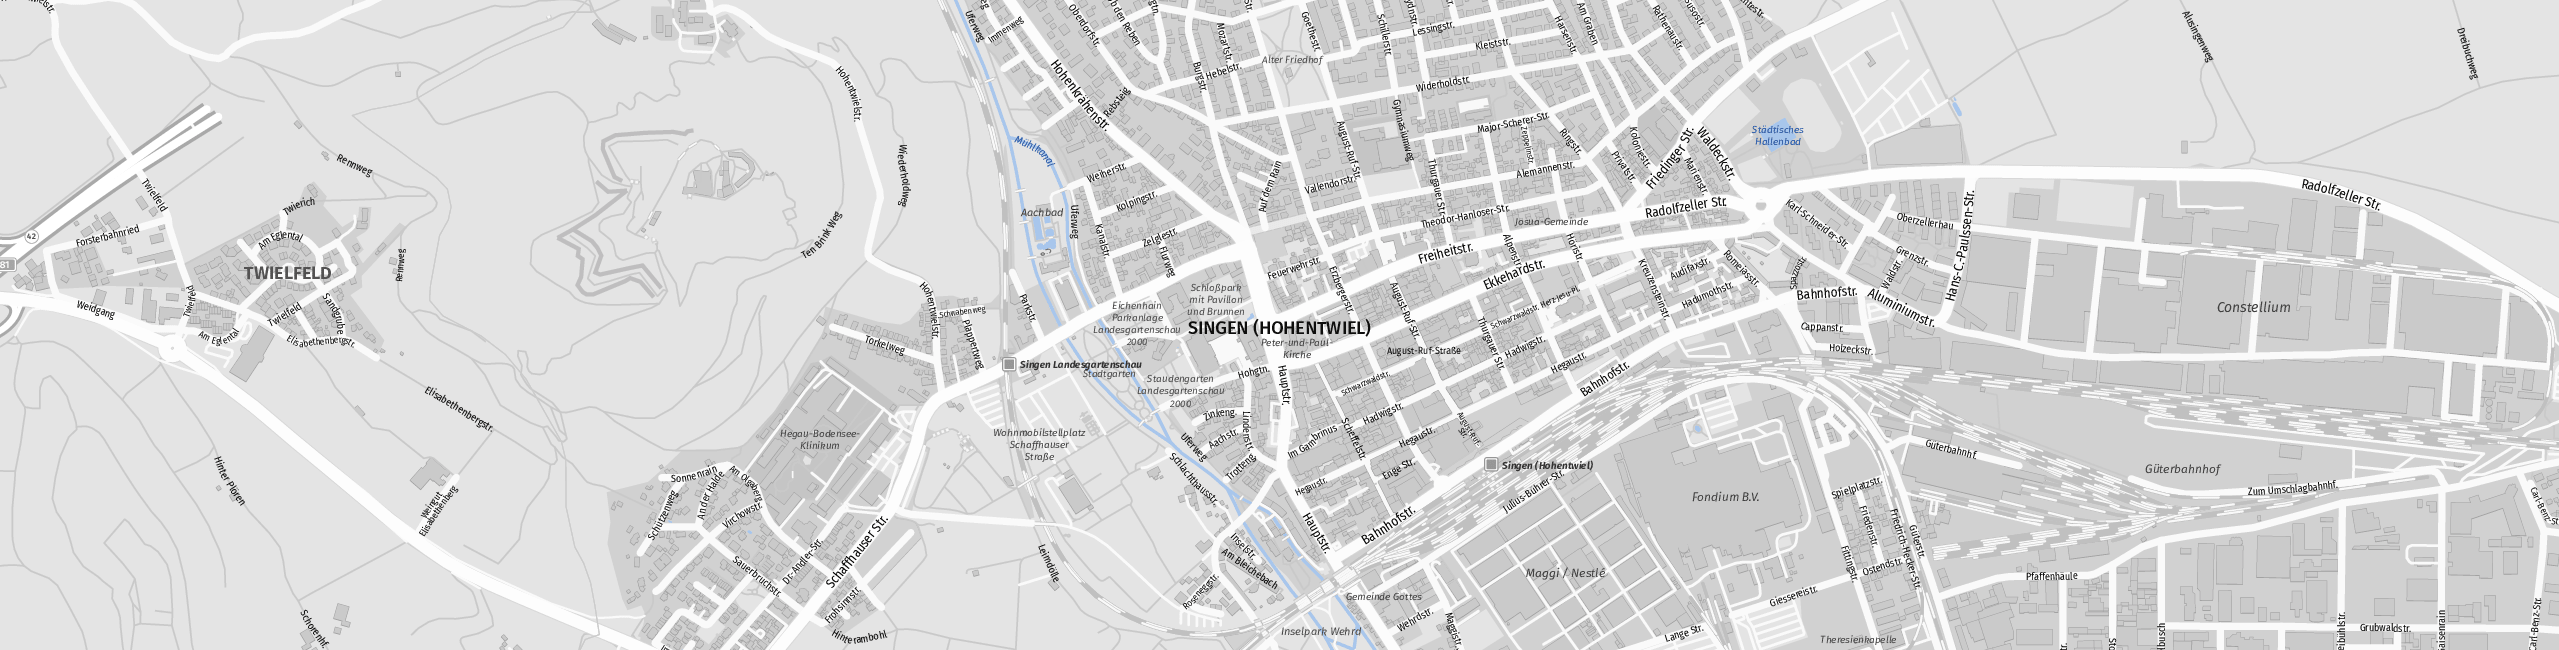 Stadtplan Singen (Hohentwiel) zum Downloaden.